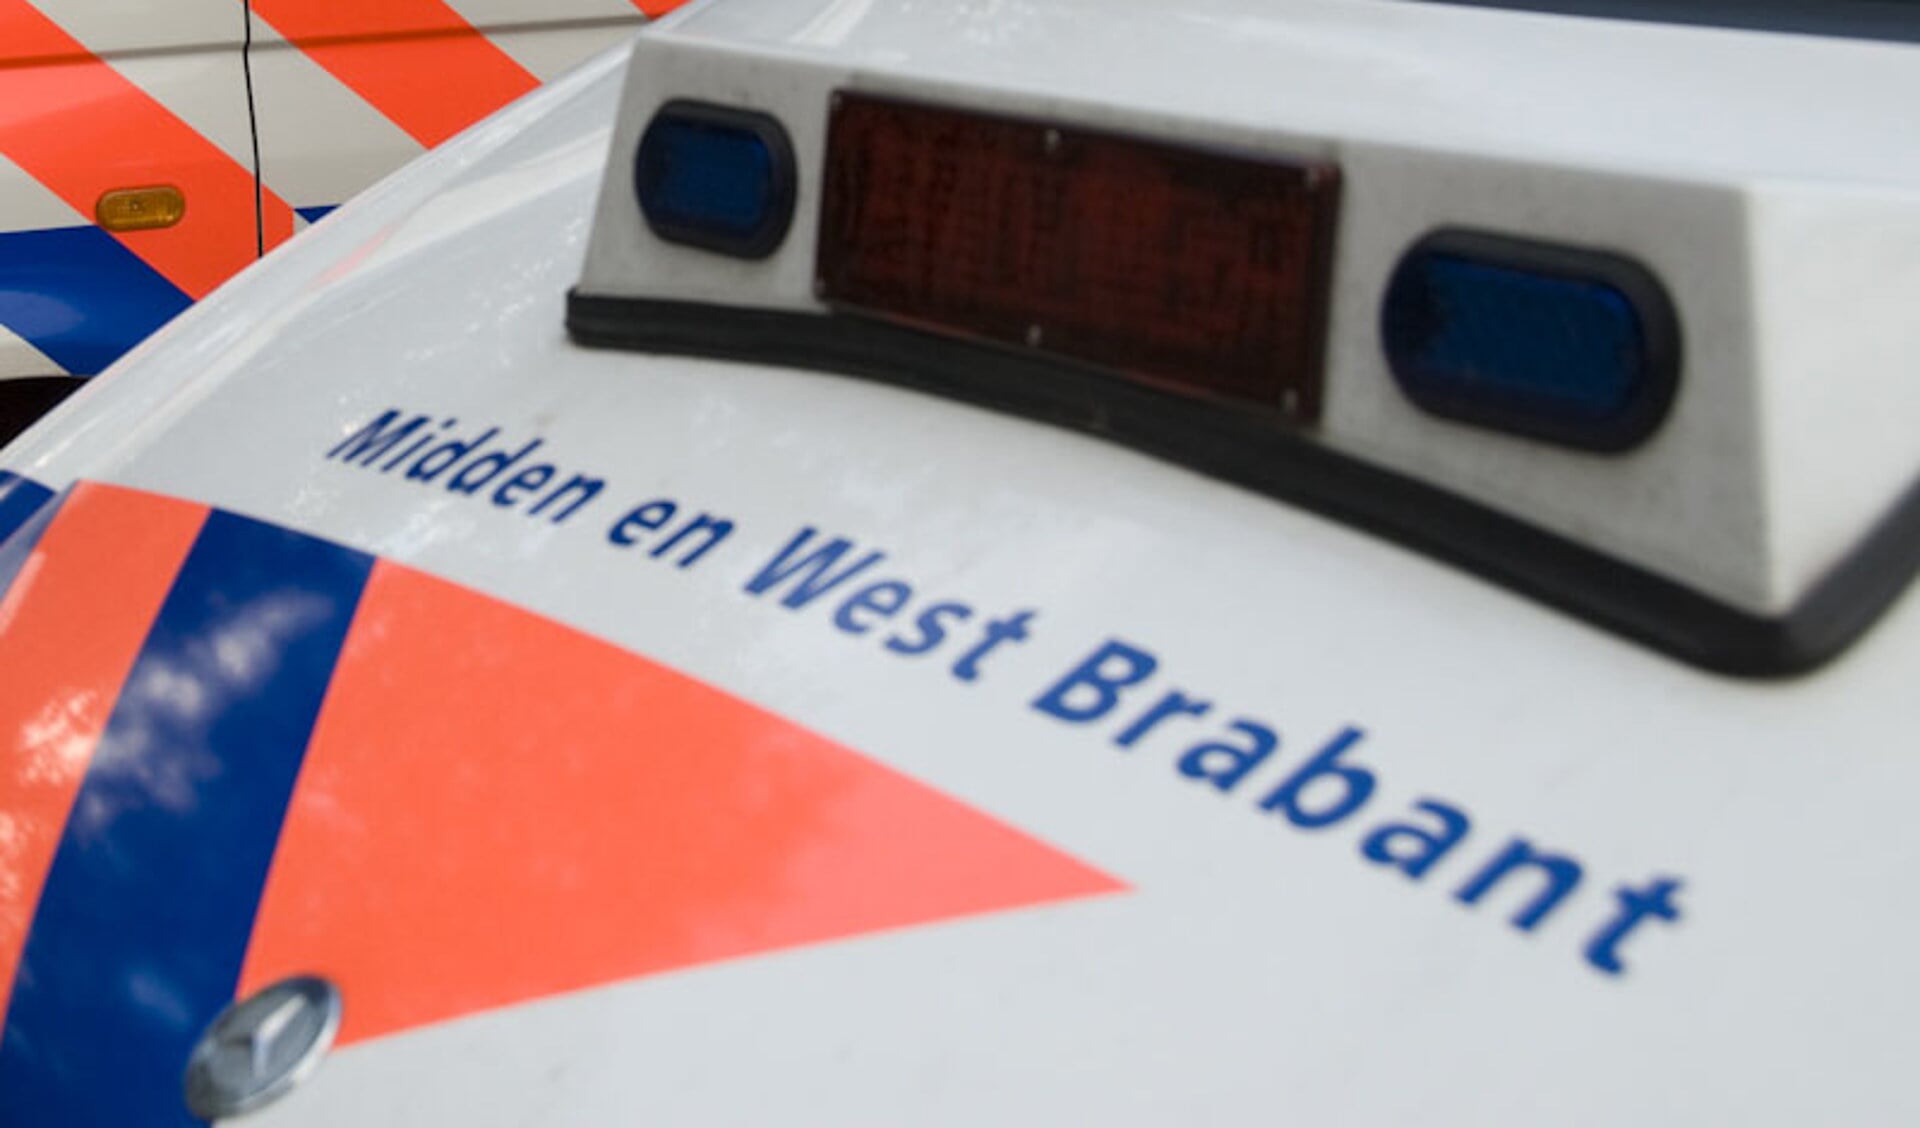 vijf personen aangehouden na woninginbraak Bergen op Zoom